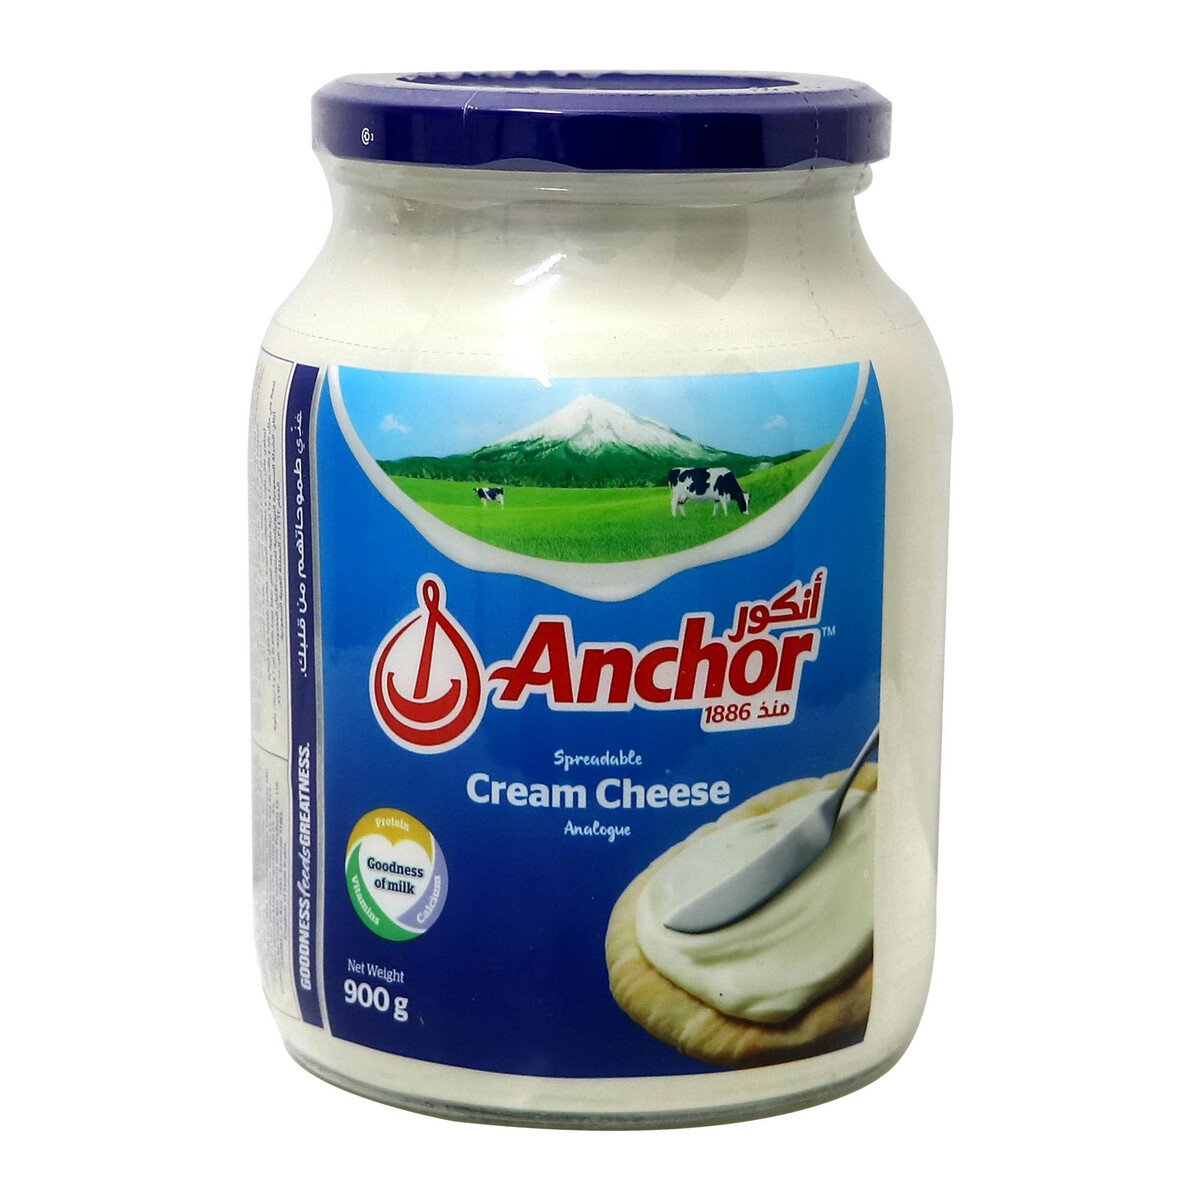 Anchor Spreadable Cream Cheese 900g